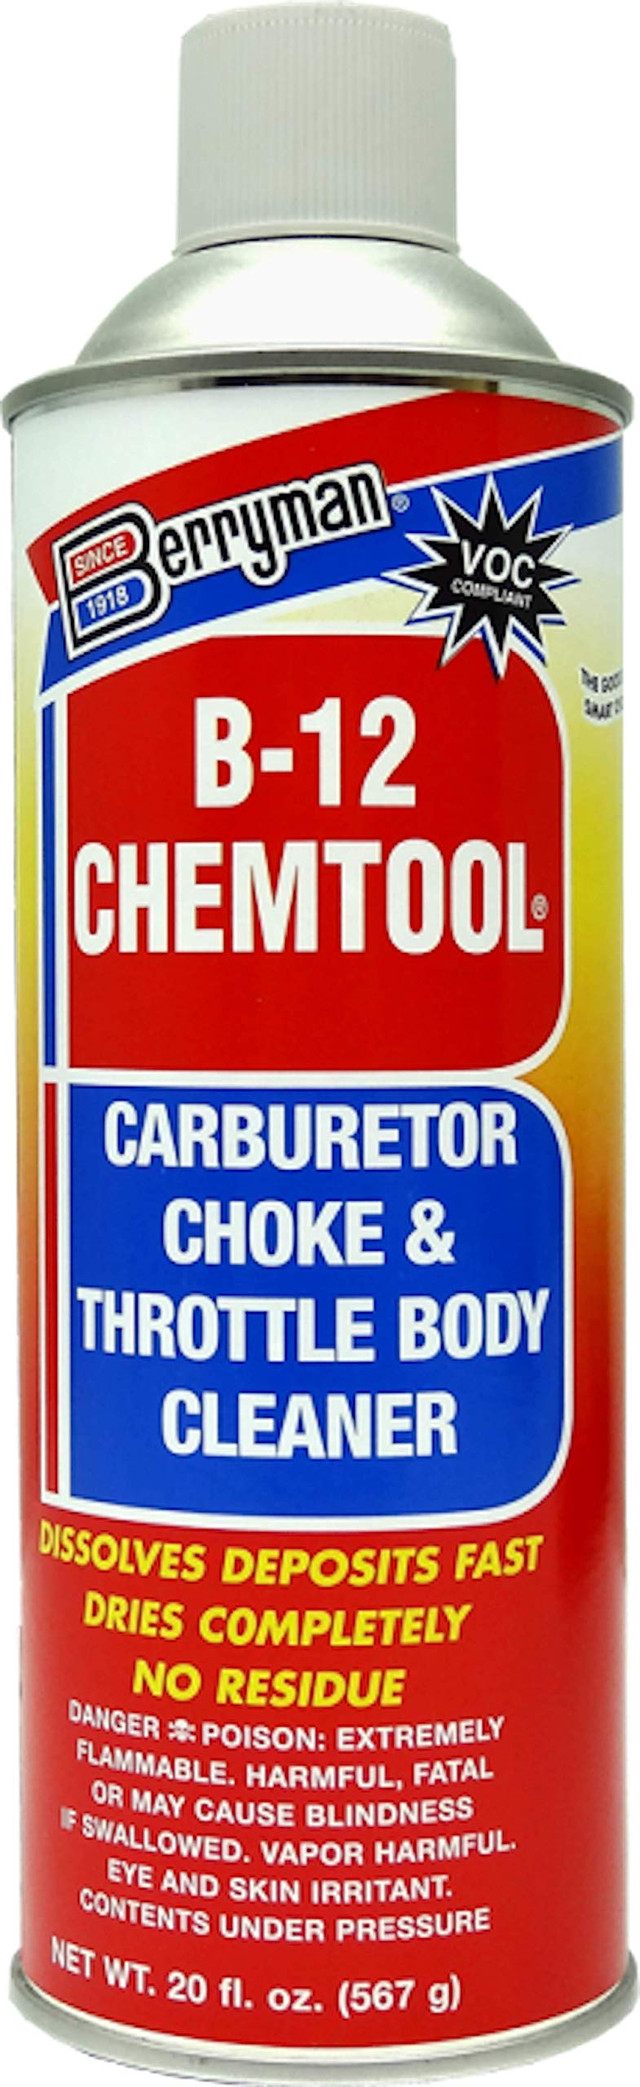 منظف ​​المكربن ​​كيمتول بي-12 BERRYMAN - كاليفورنيا (0120c)